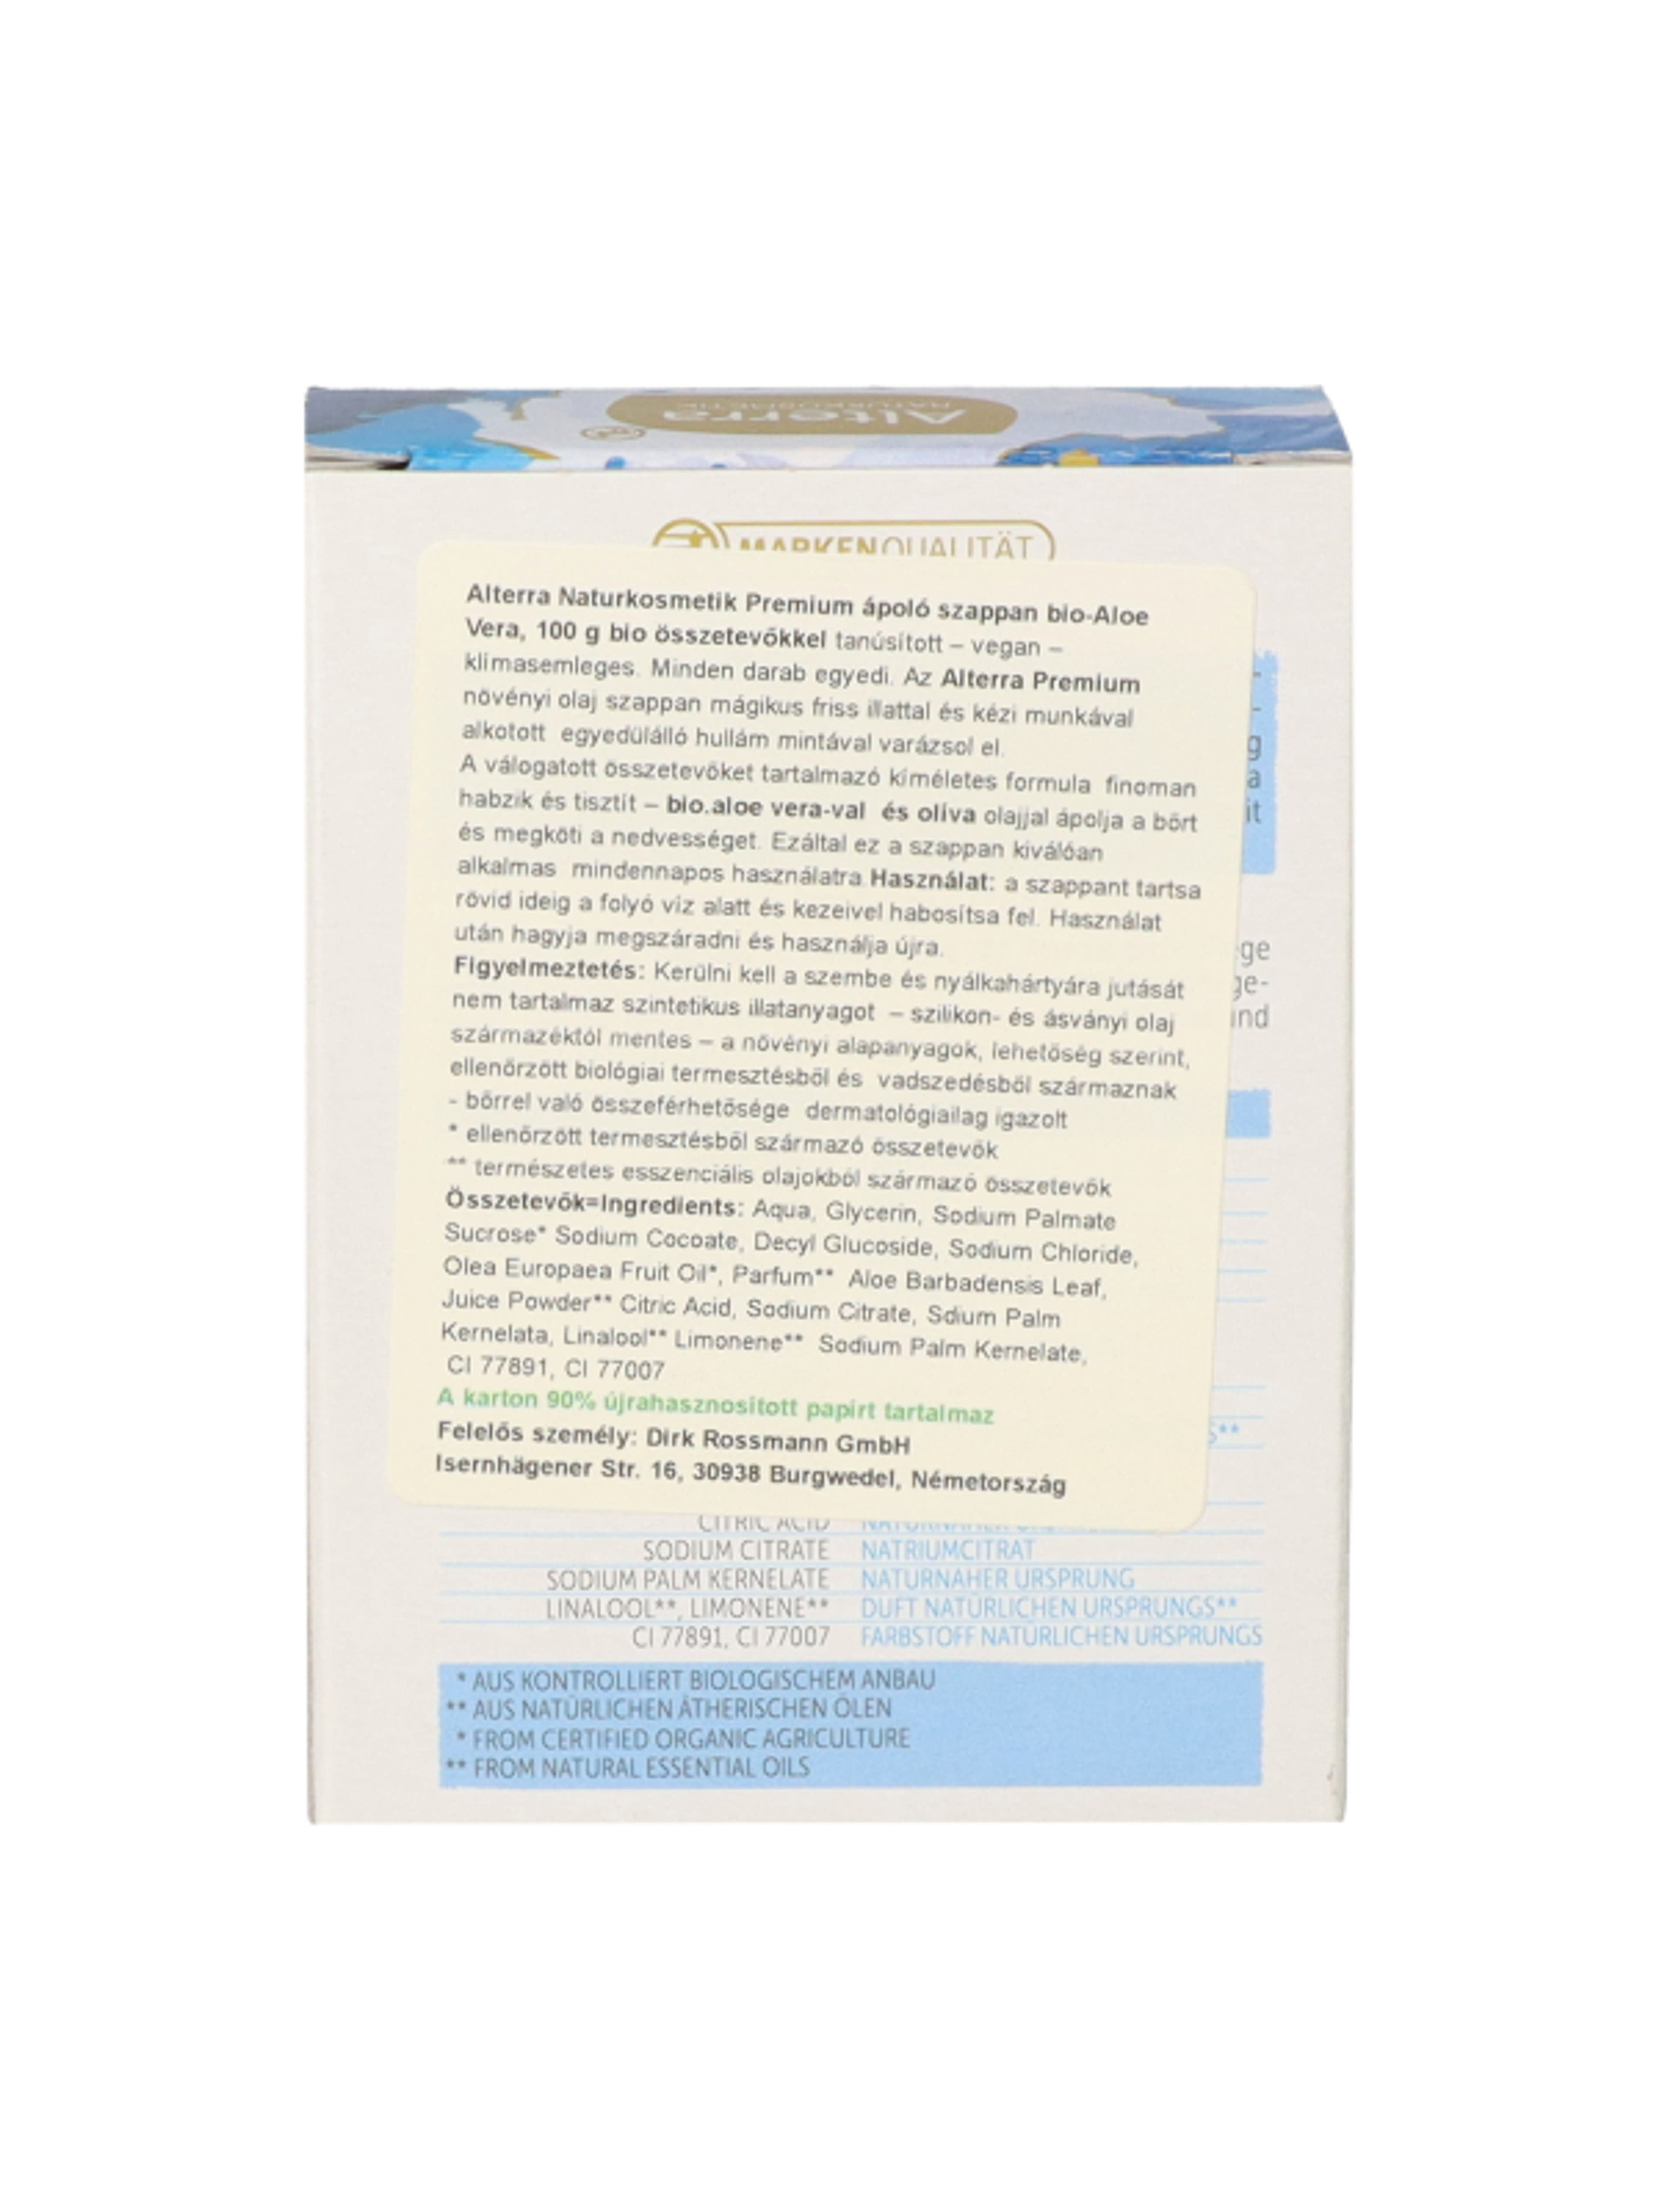 Alterra Naturkosmetik Premium ápoló szappan - 1 db-5